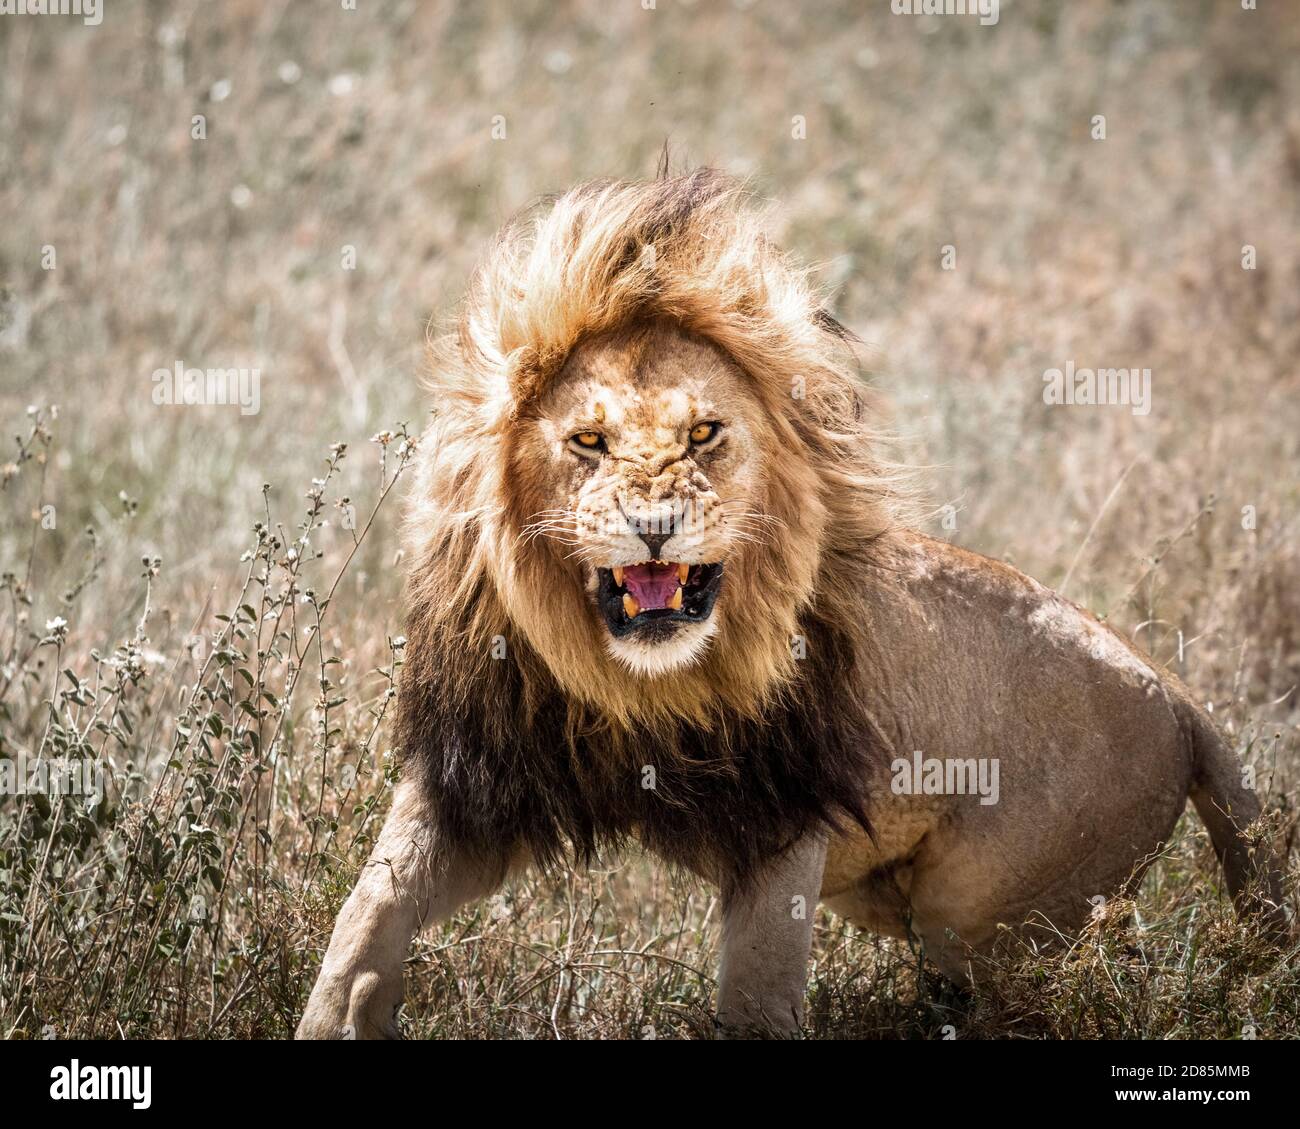 photo de l'avant du lion mâle rugissant Banque D'Images